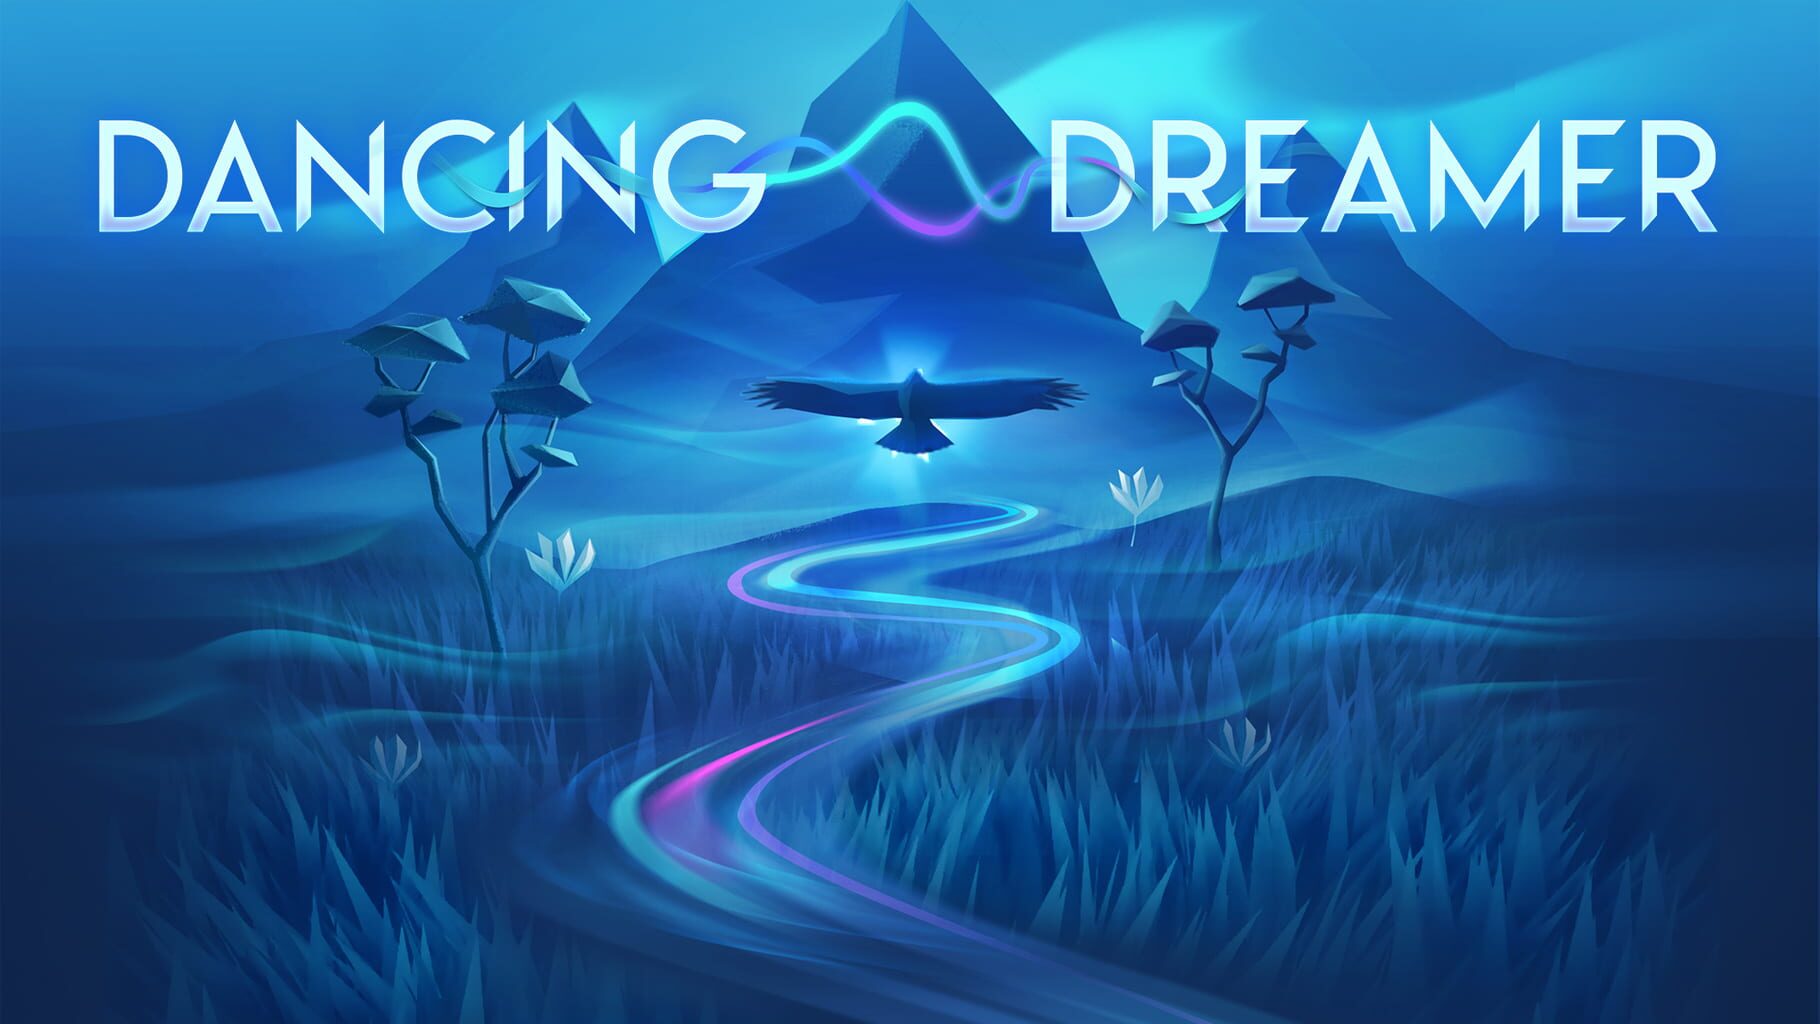 Dancing Dreamer artwork